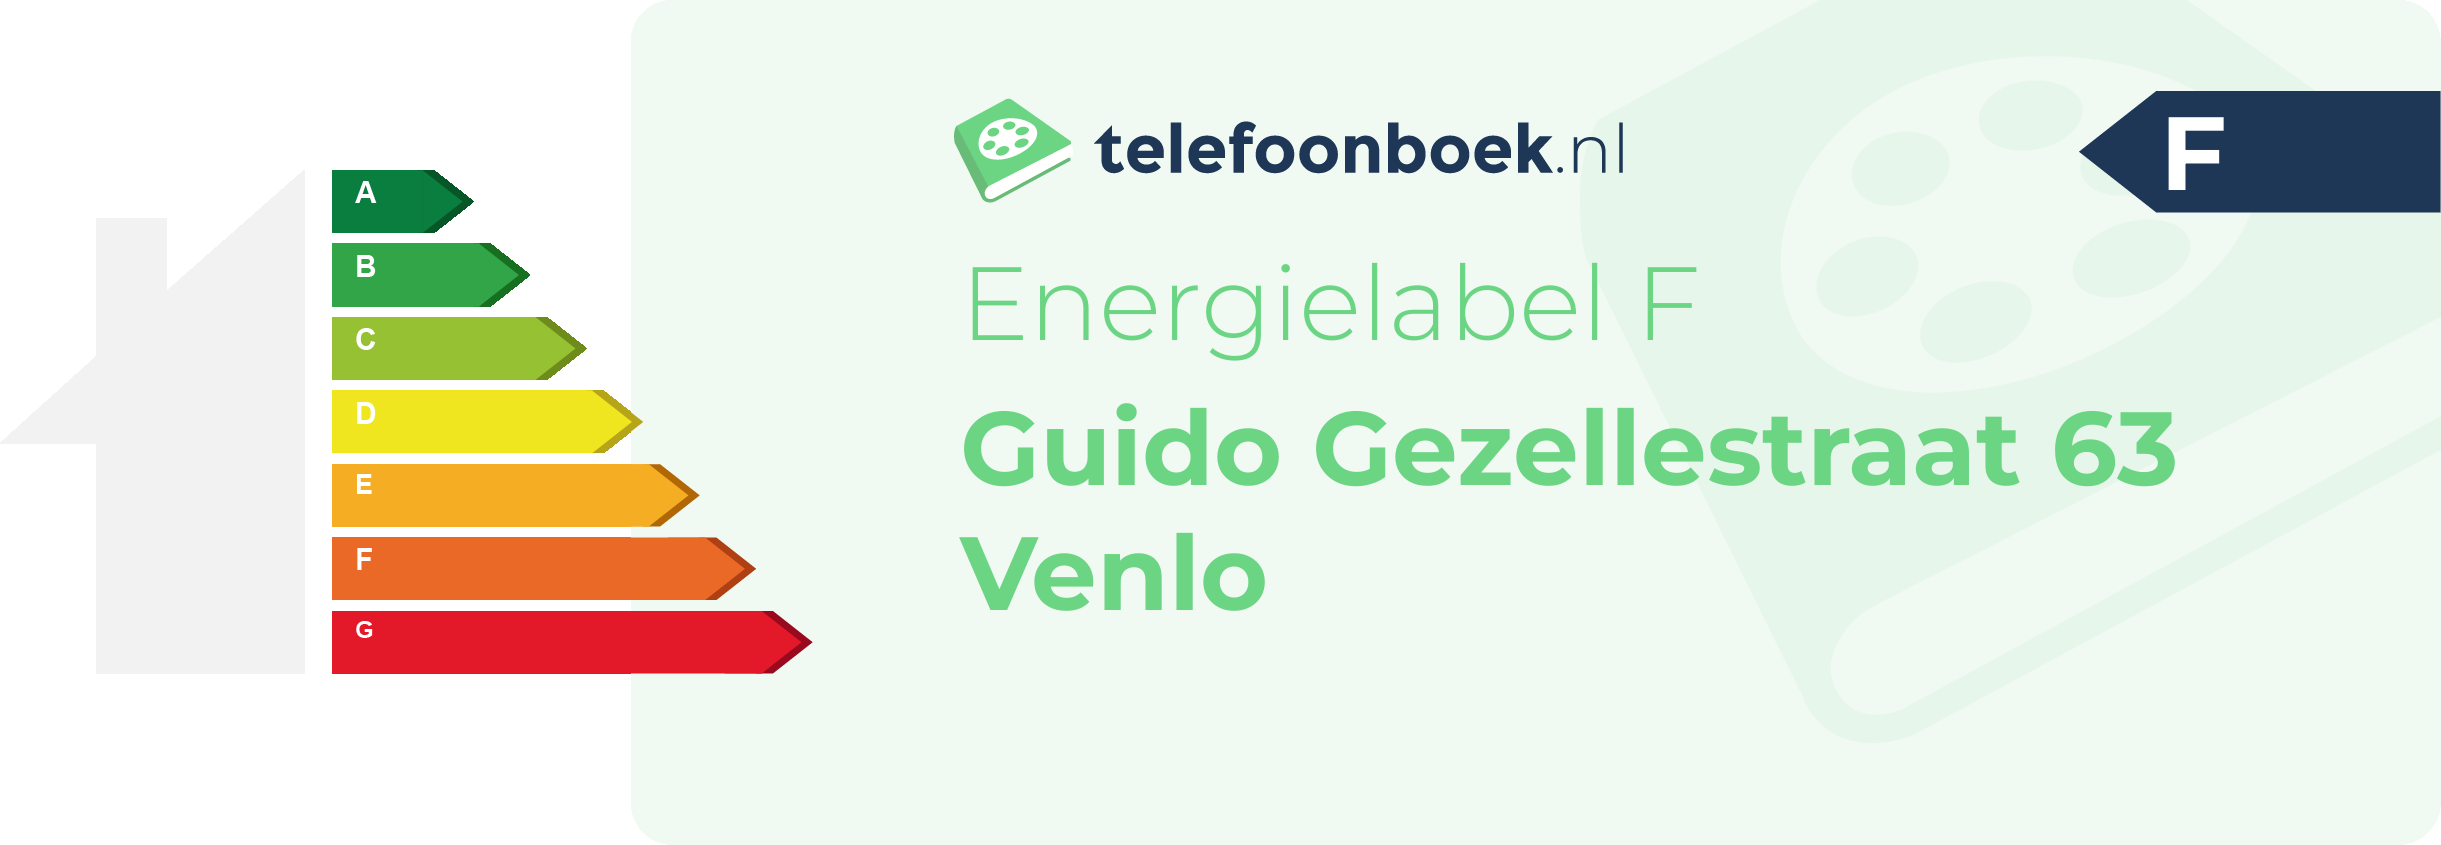 Energielabel Guido Gezellestraat 63 Venlo